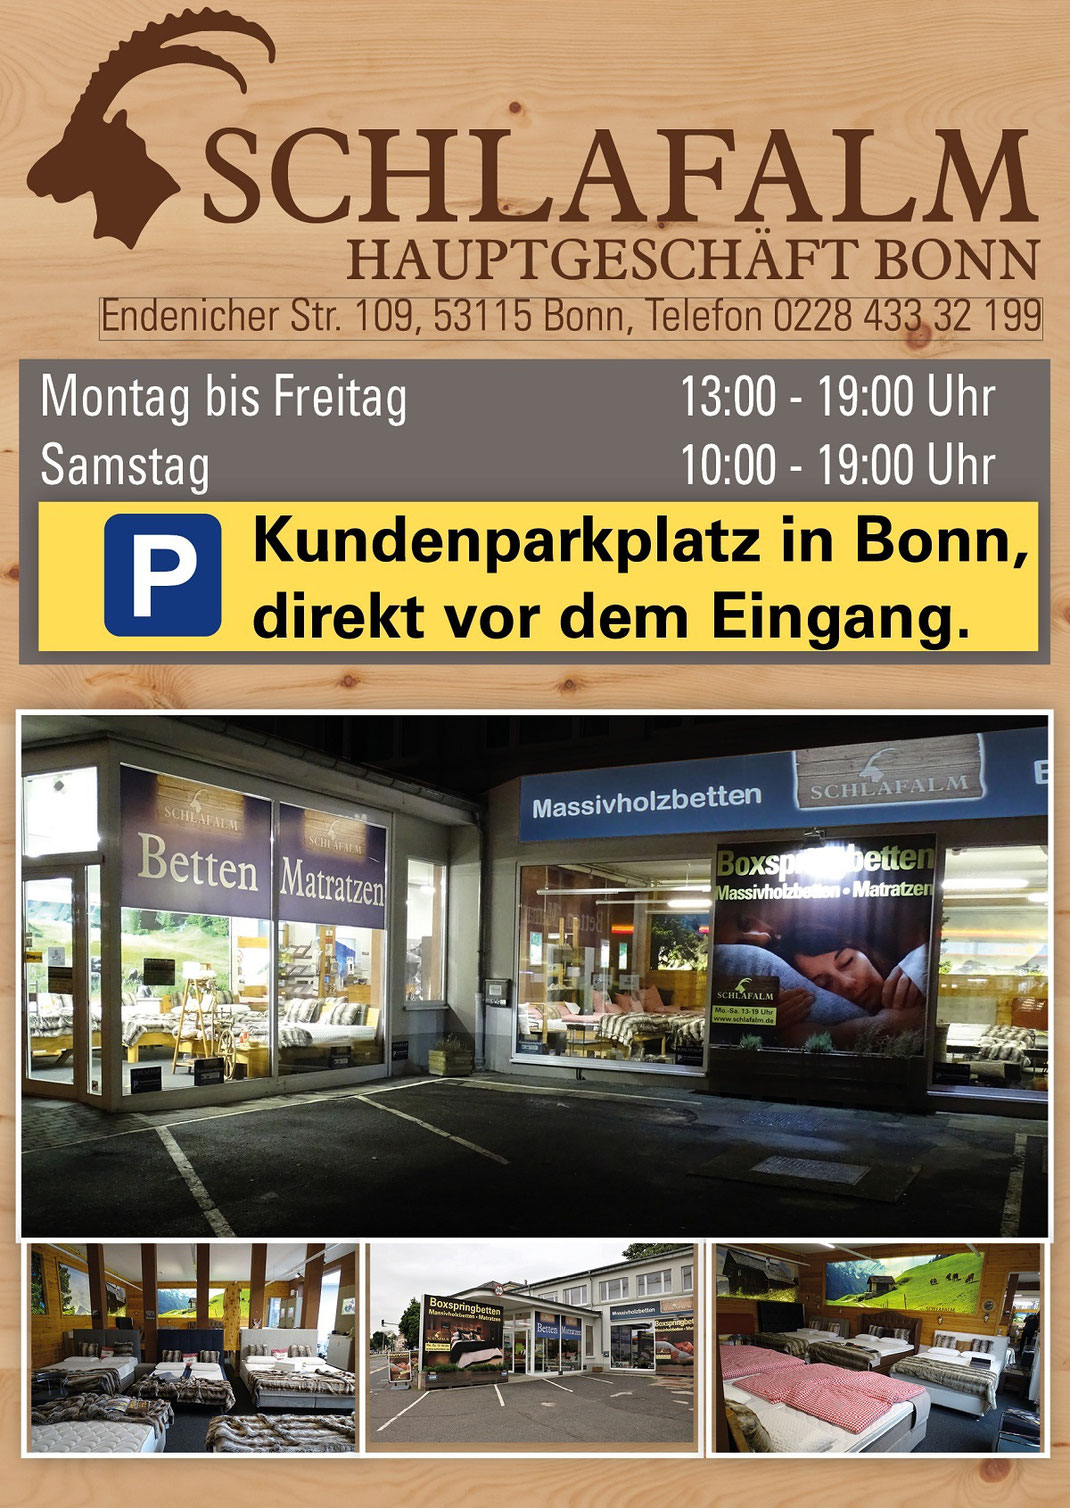 Ein Bild für Kunden aus Troisdorf, das Text, Matratzen, Taschenfederkernmatratzen, Kaltschaummatratzen, extra feste Matratzen enthält.